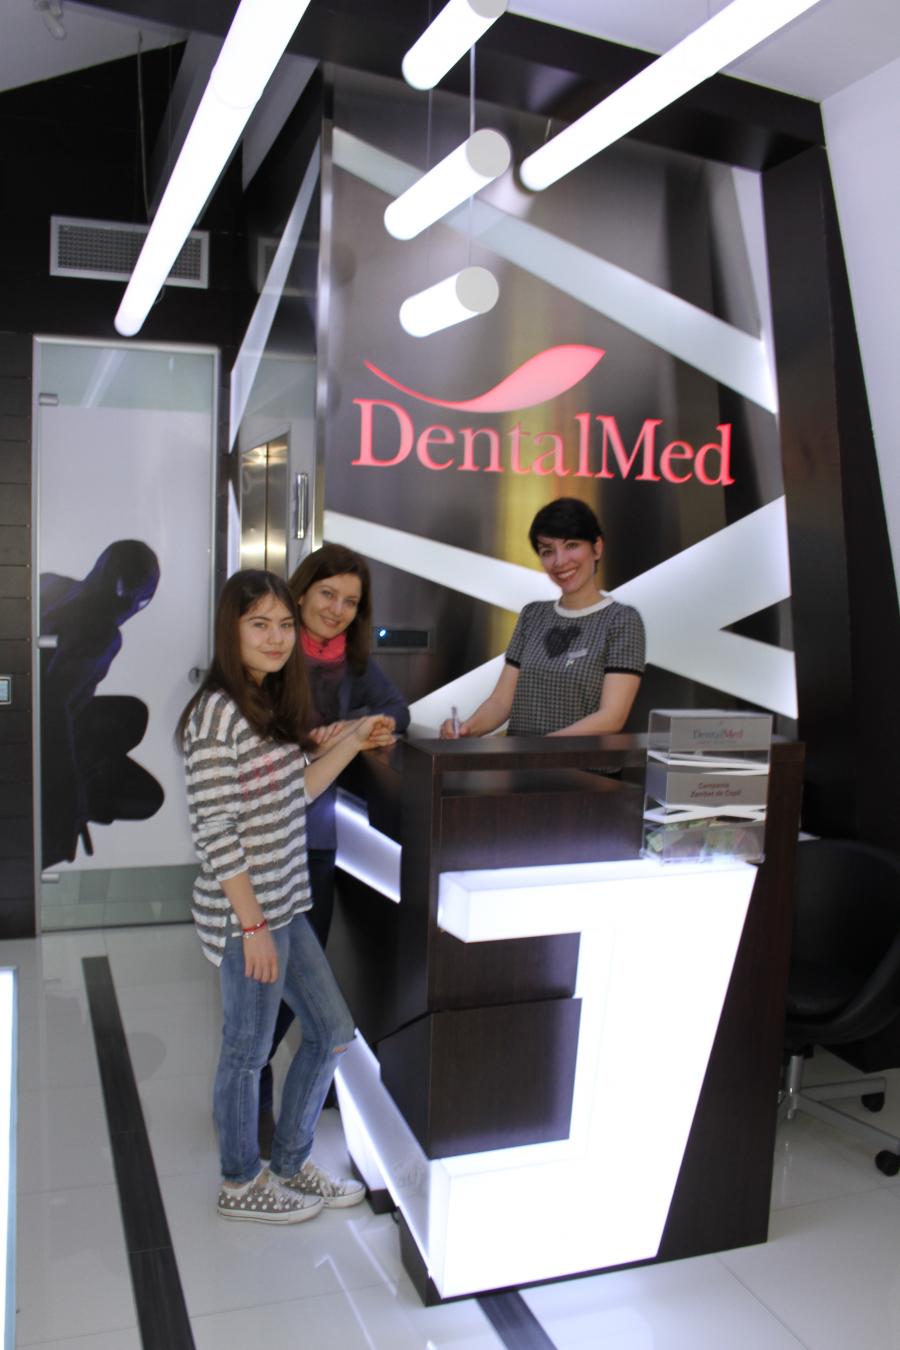 Poze%20DentalMed%2004.03.2014%200362 Imagini din clinica stomatologica DentalMed Luxury Marriott